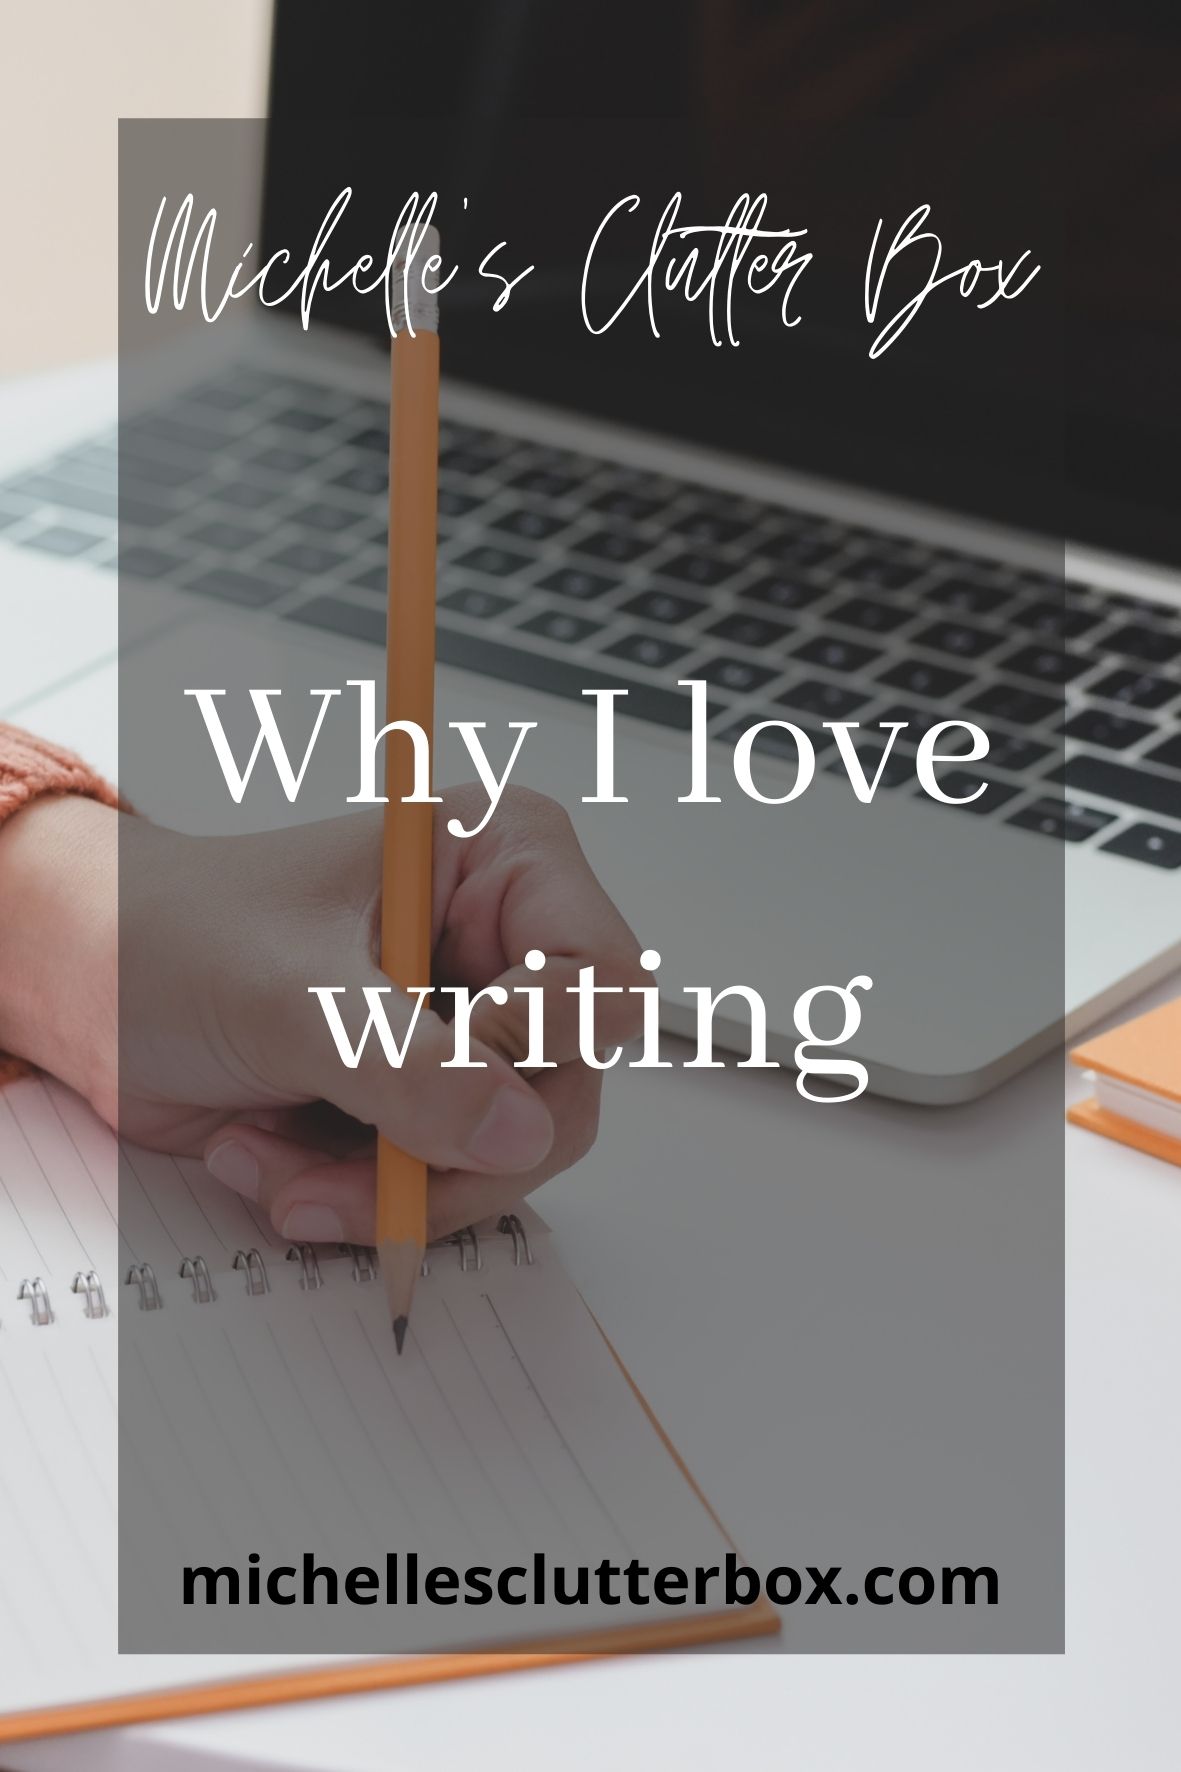 Why I love writing